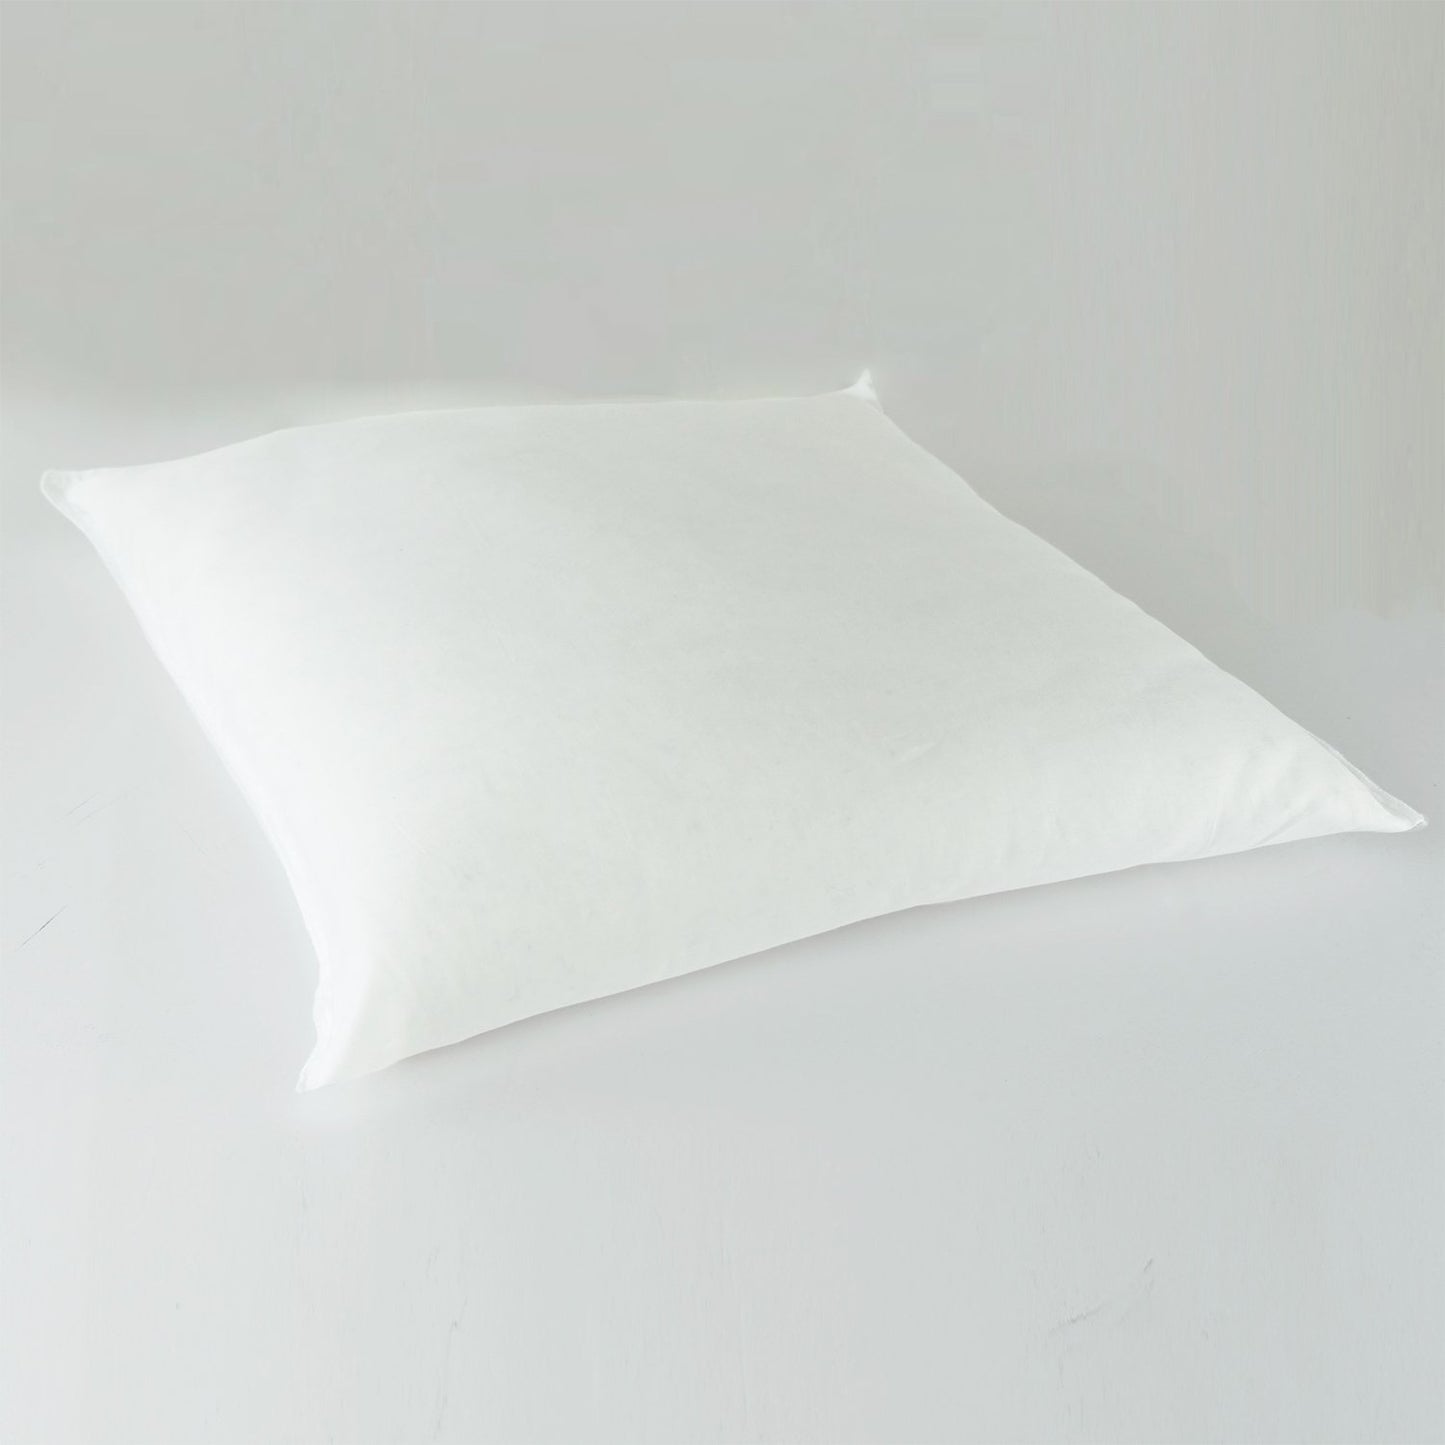 J-Life Tombo Gold #2 Zabuton Floor Pillow_Pillows & Shams_Zabuton Floor Pillows_100% Cotton_Reversible_Handmade